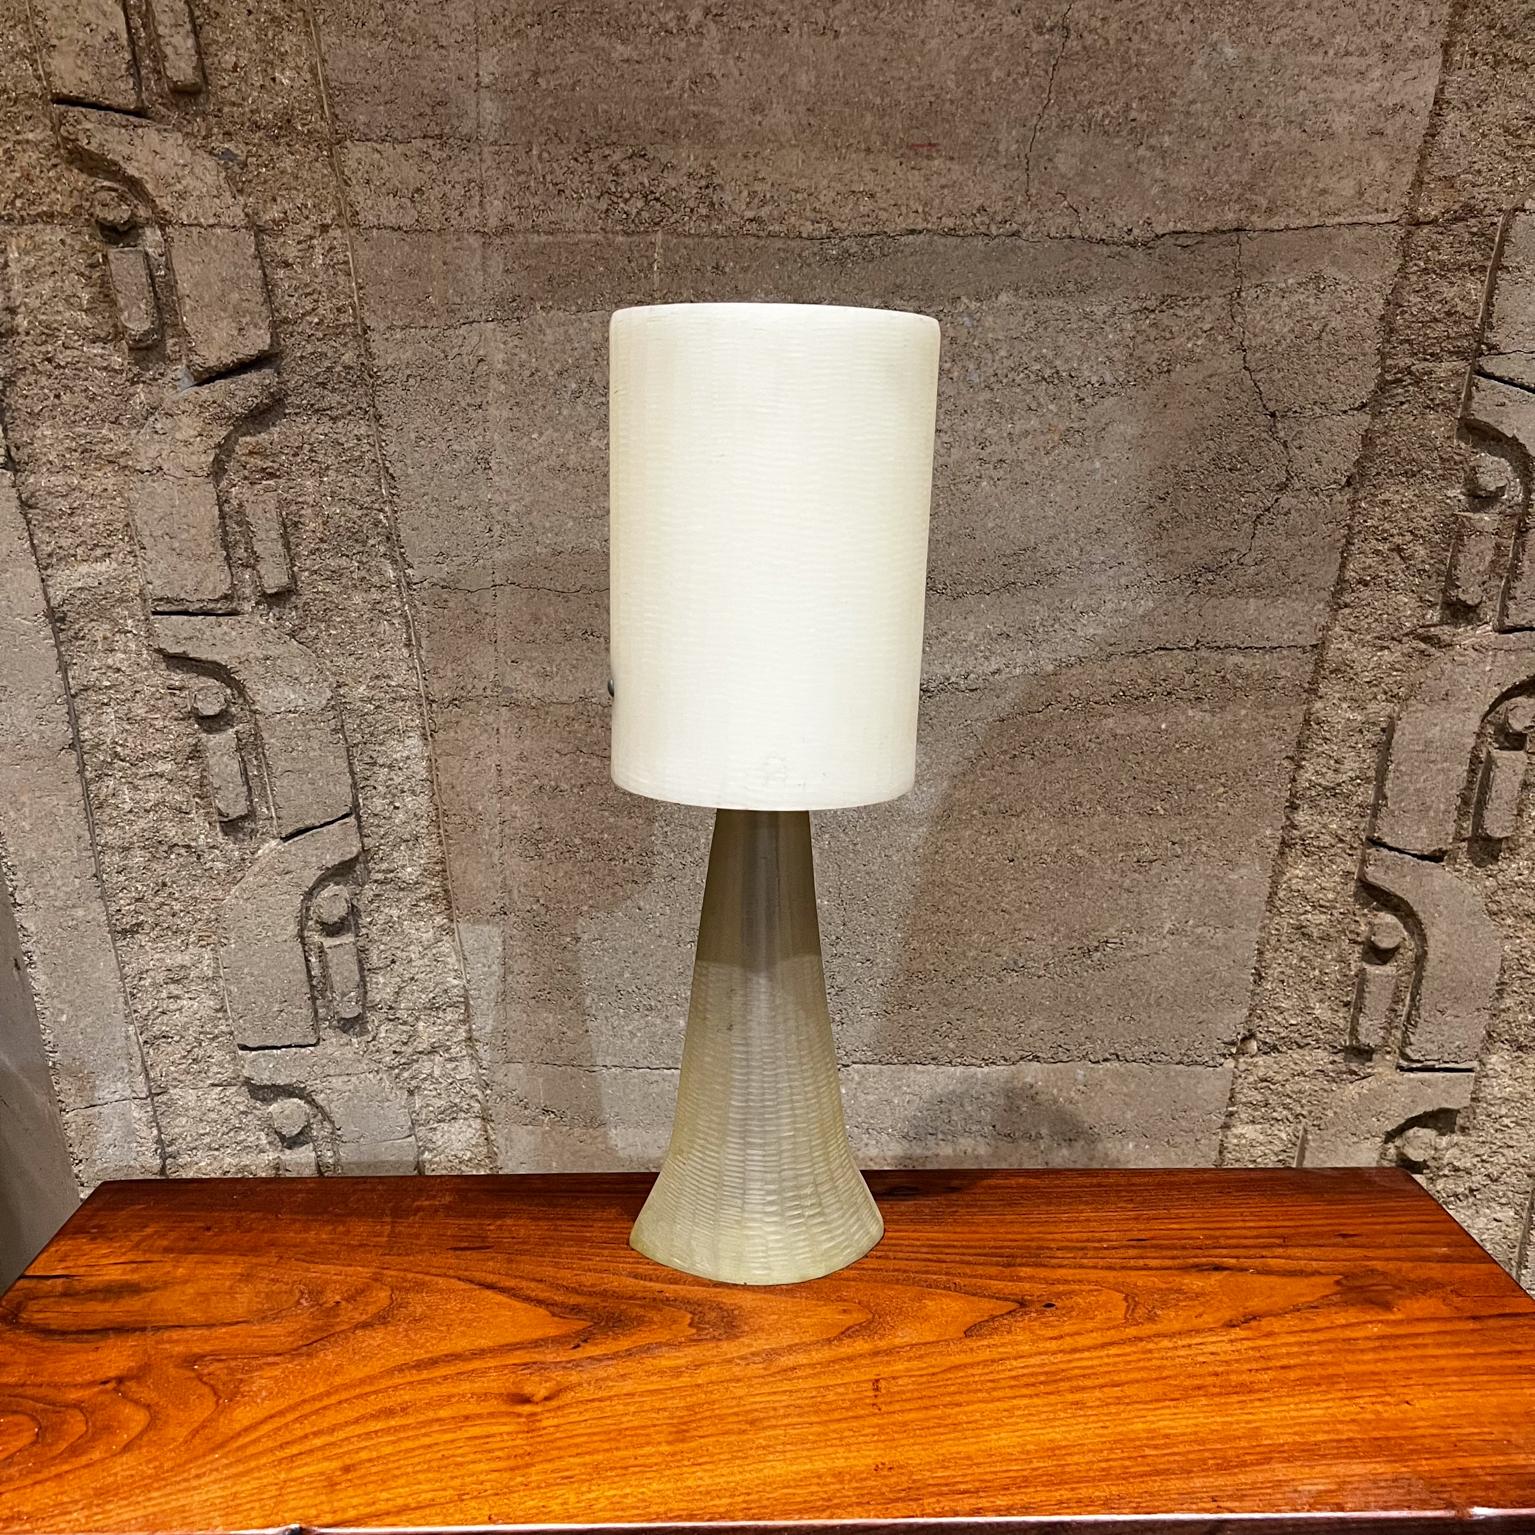 Lampe de table en résine des années 1970 Midcentury Modern Vintage
18,75 h x 6,25 diamètre
État vintage d'origine.
Reportez-vous aux images fournies.